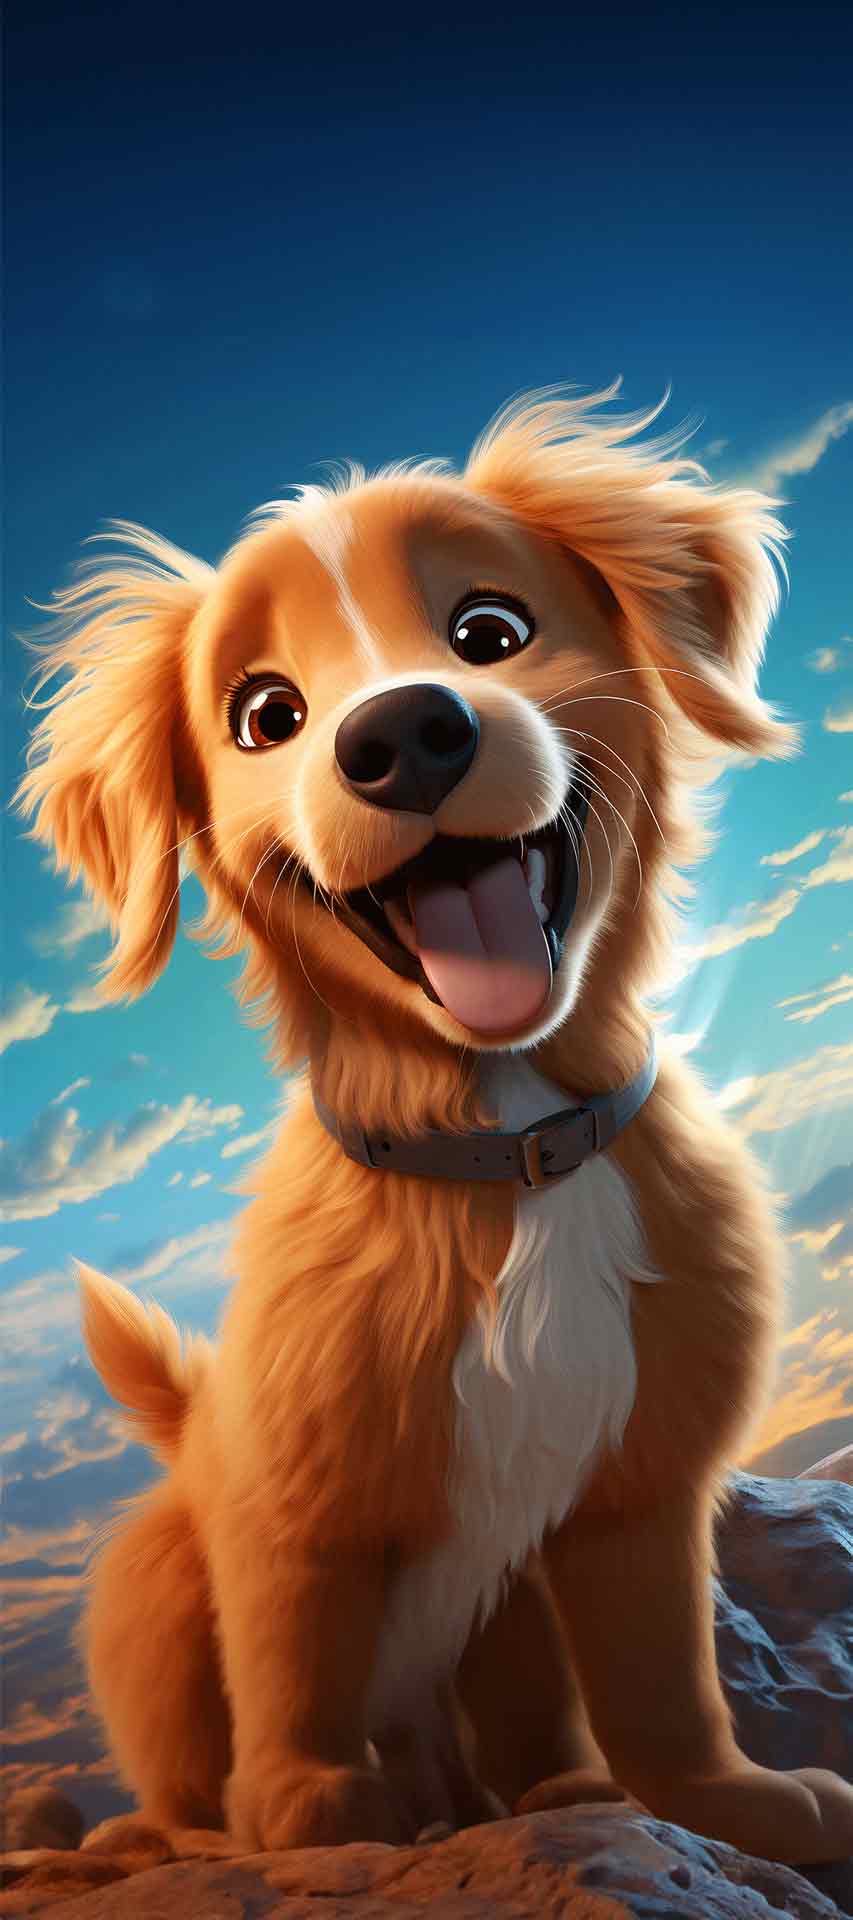 卡通可爱的小狗iPhone壁纸